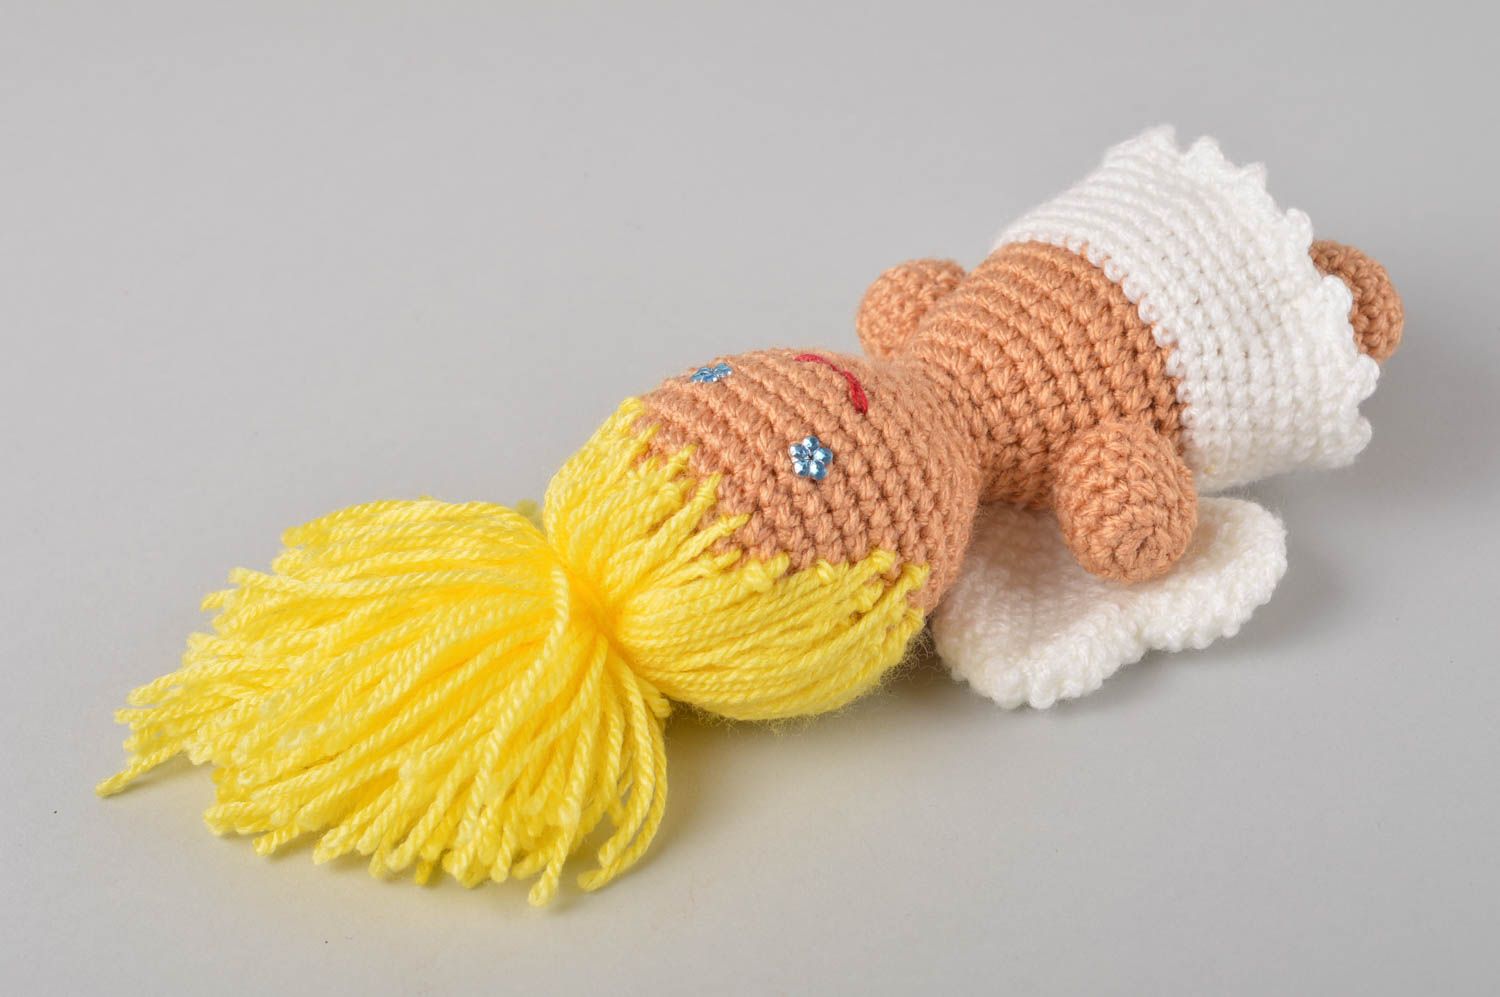 Handmade doll designer doll soft doll gift for girls crocheted doll gift ideas photo 2